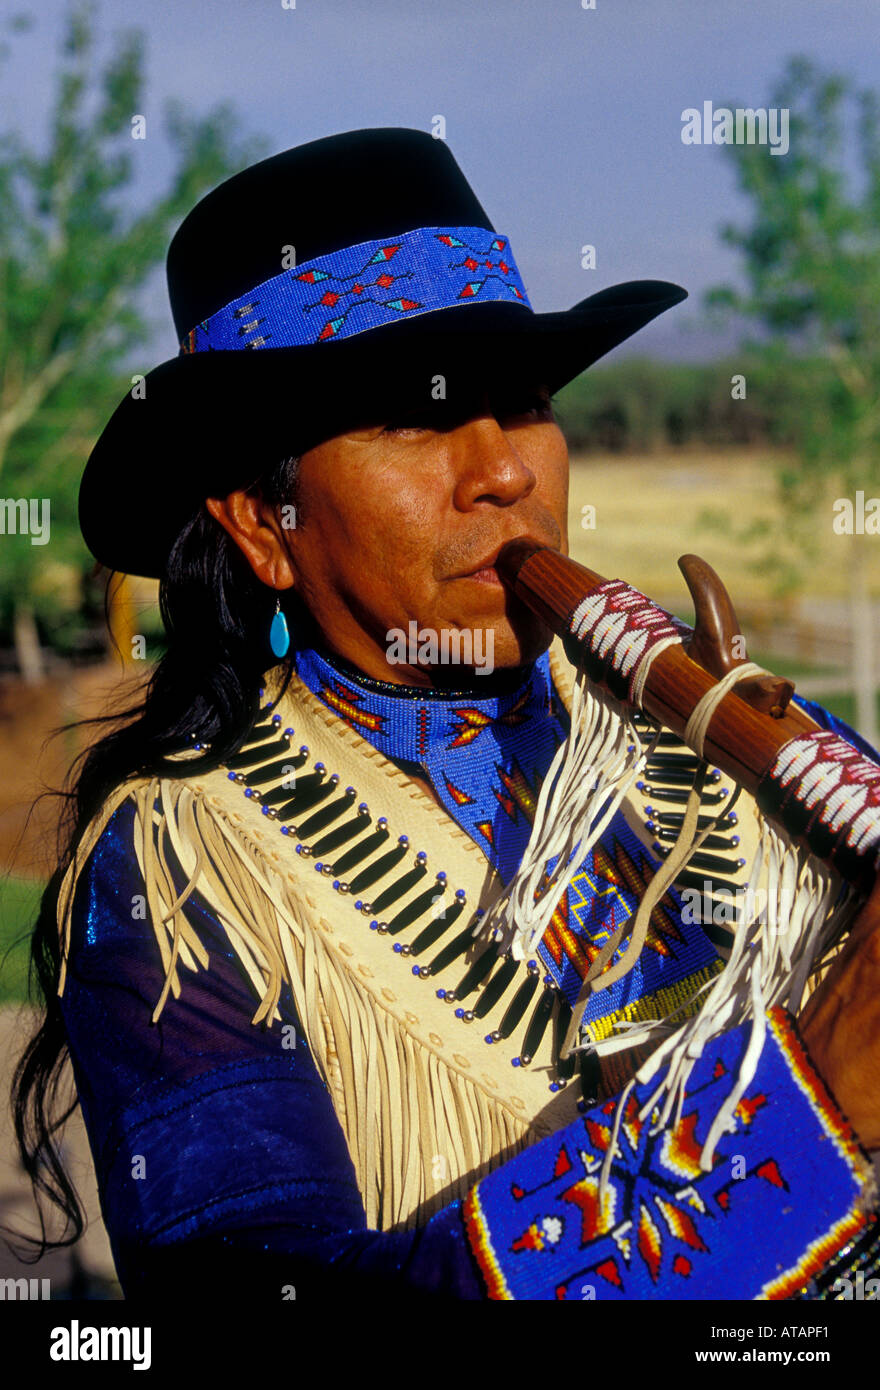 Allenroy Paquin, Native American Indian, Amérindiens, artiste, musicien, jouant de la flûte, joueur de flûte, flûtiste, flûtiste, New Mexico, United States Banque D'Images